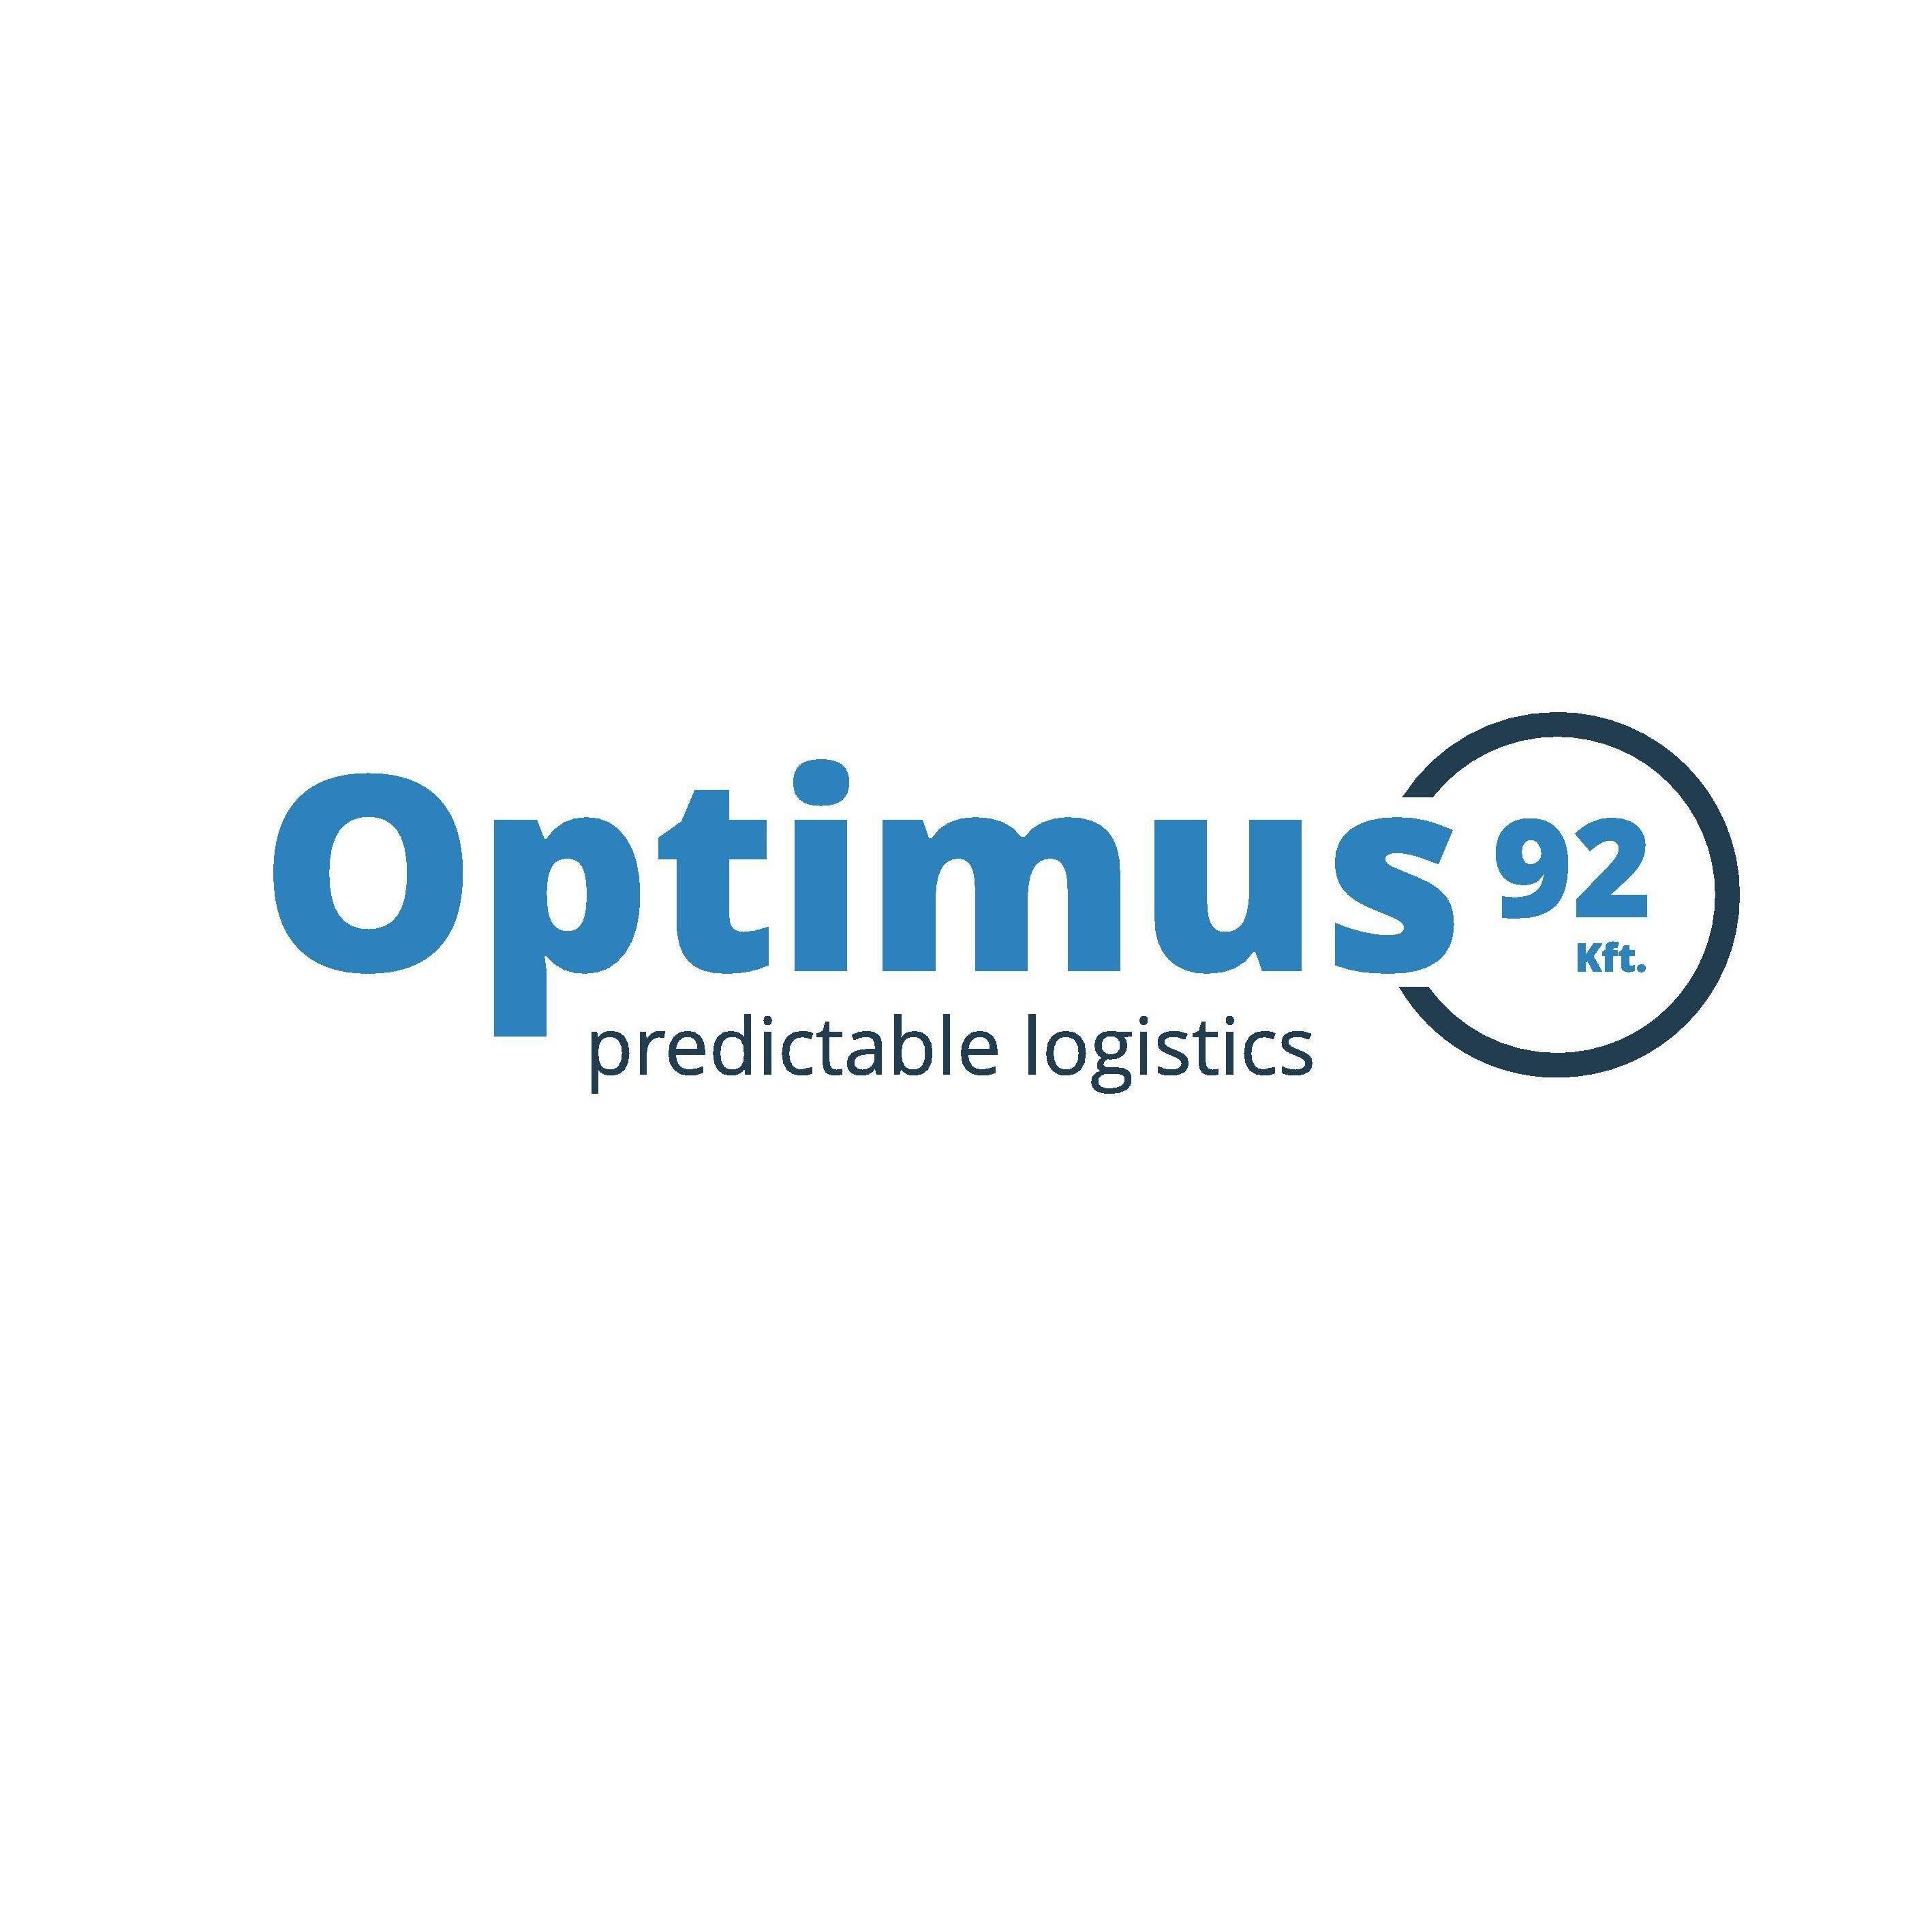 Optimus 92 Kft. Logo